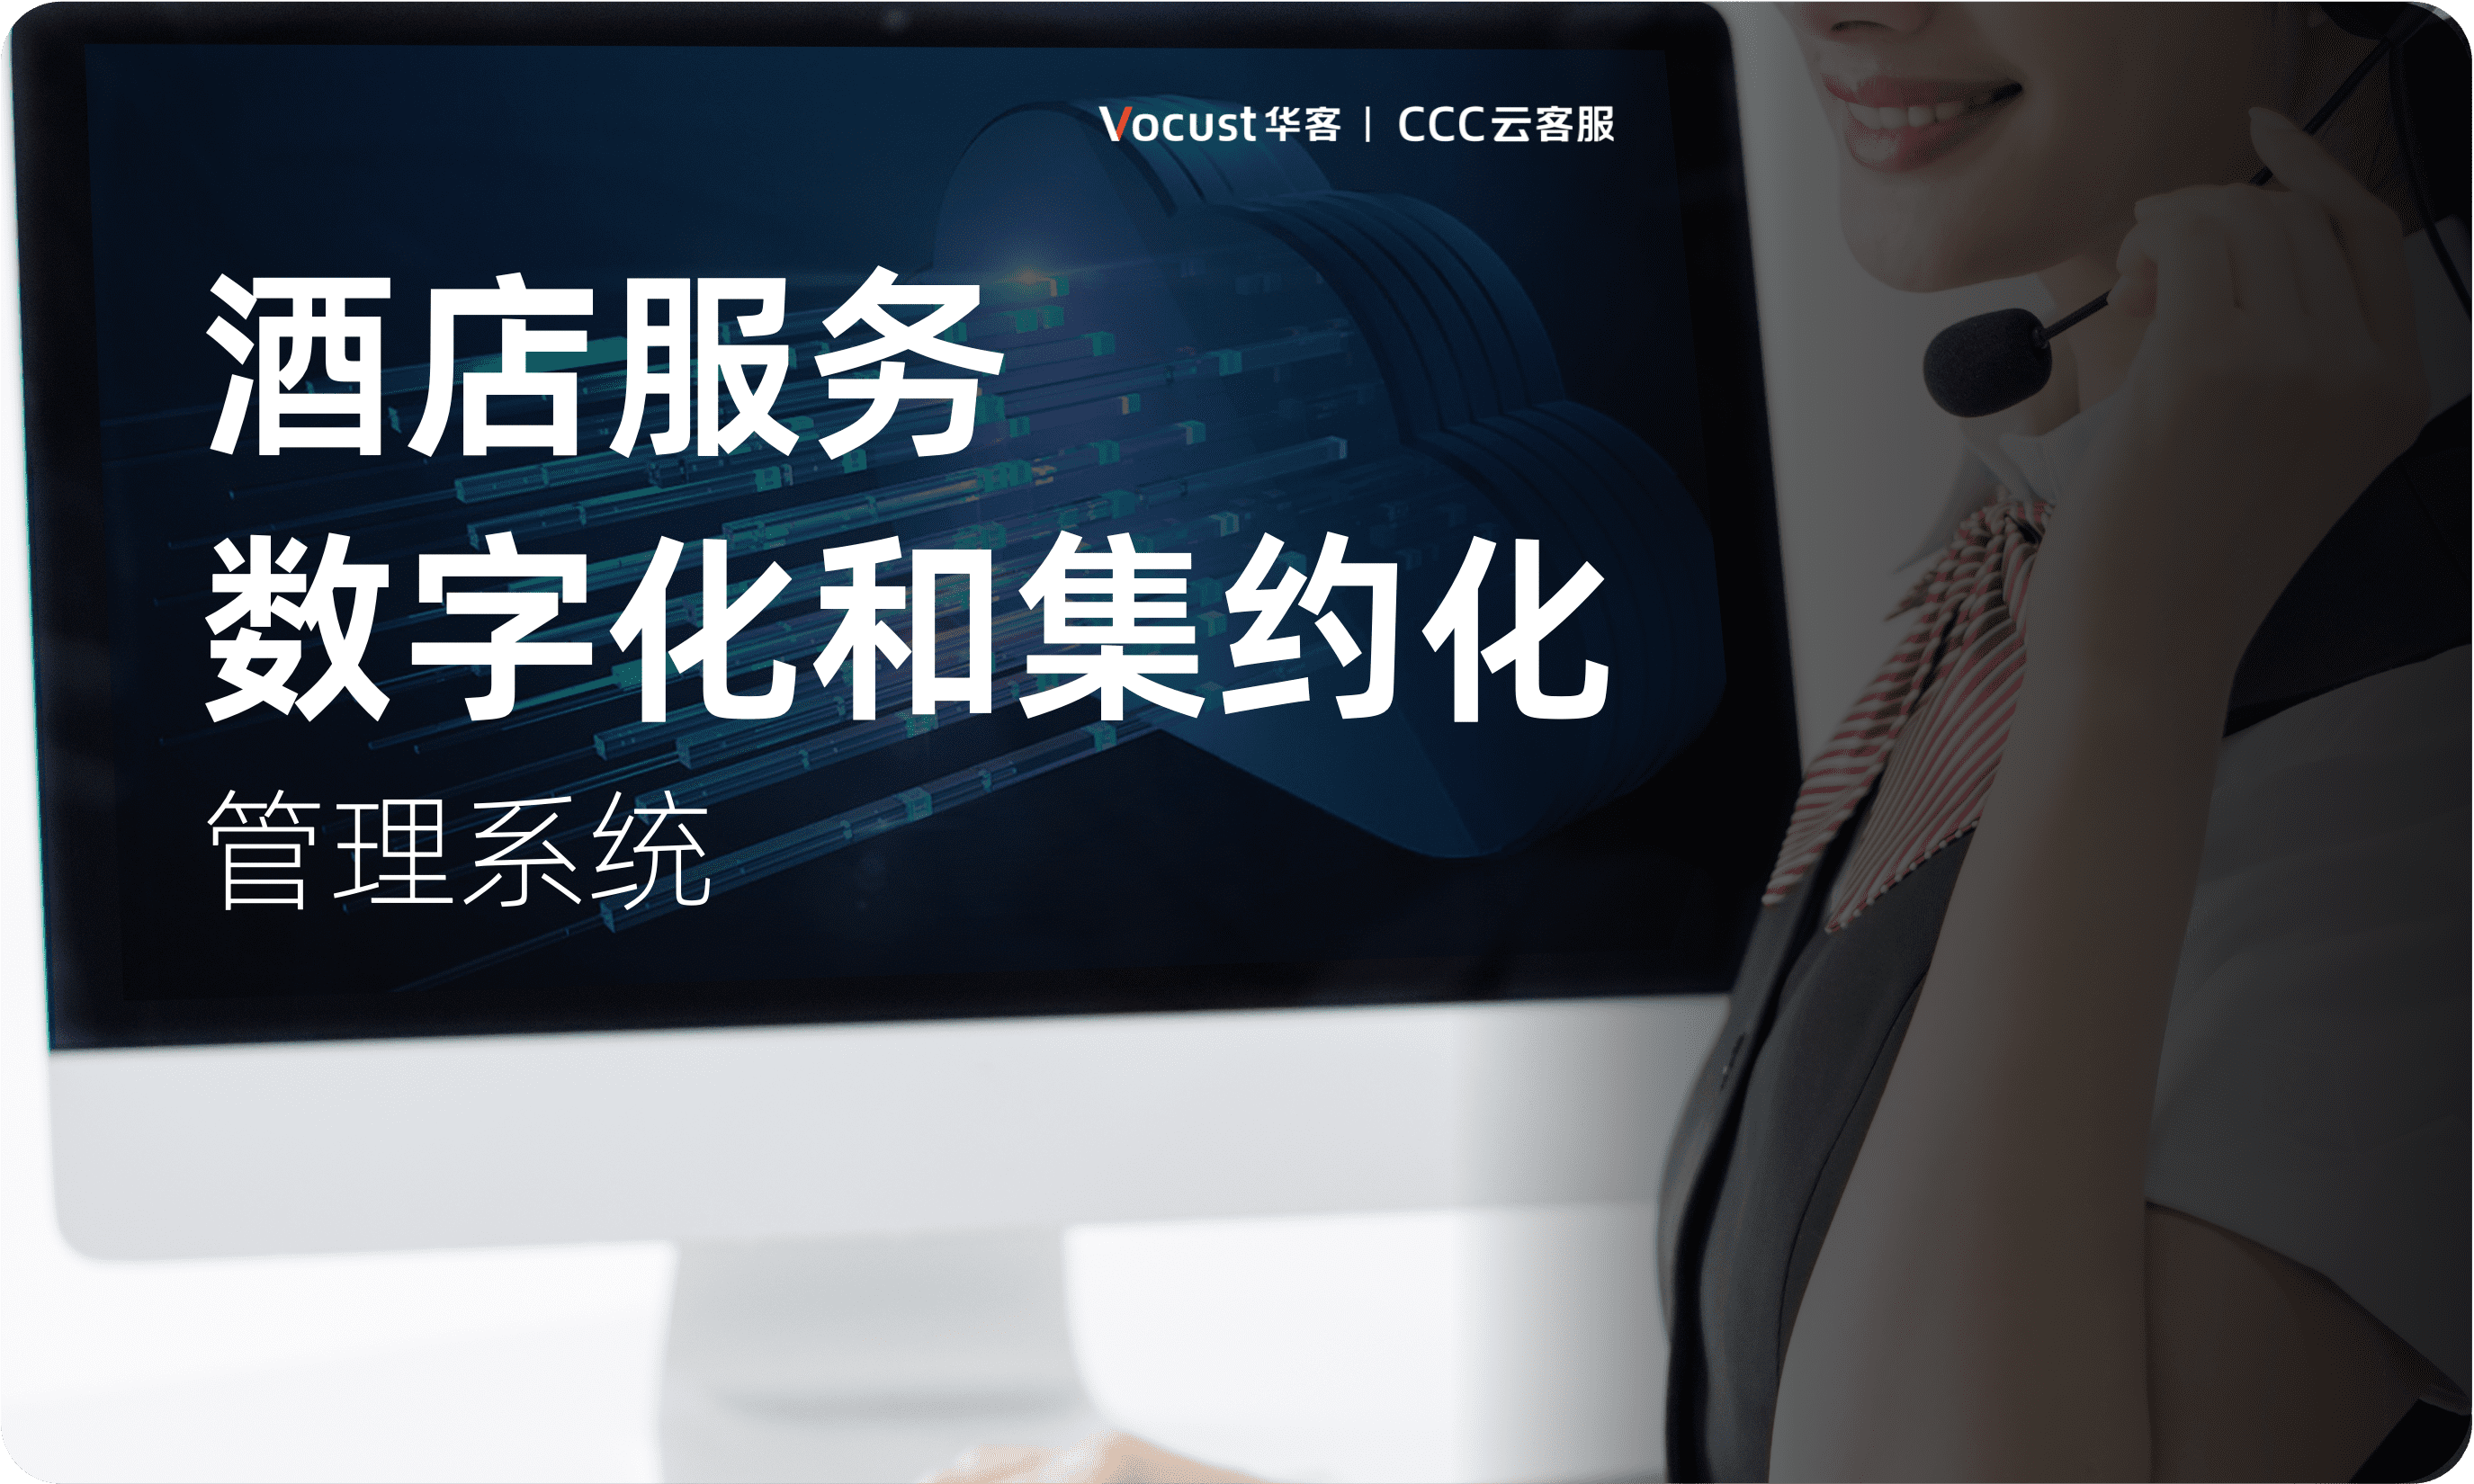 上海华客信息科技有限公司 酒店服务数字化和集约化管理系统-华客CCC云客服